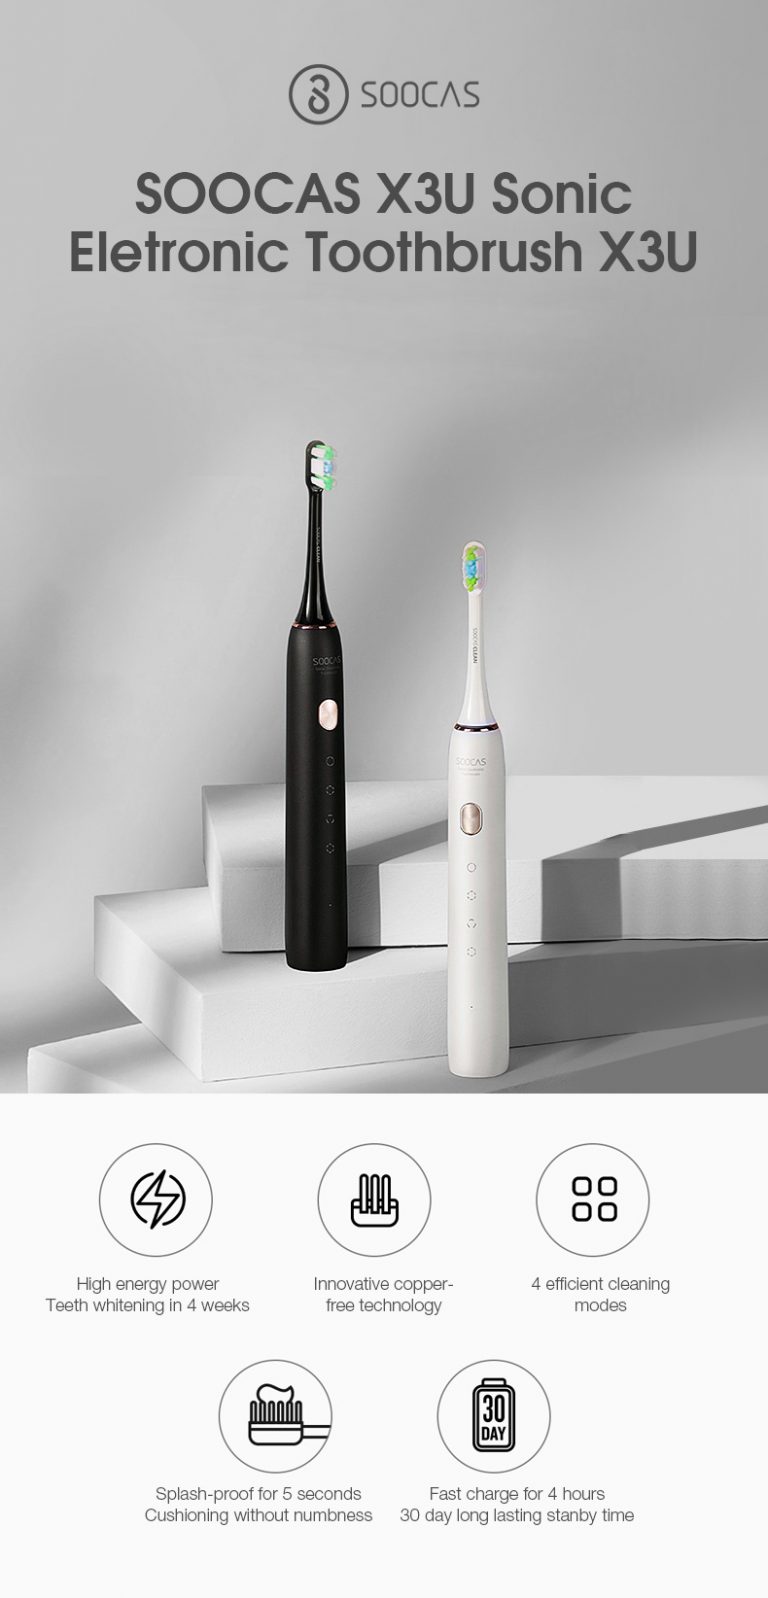 Megint jó áron kapható a Soocas X3U elektormos fogkefe 2